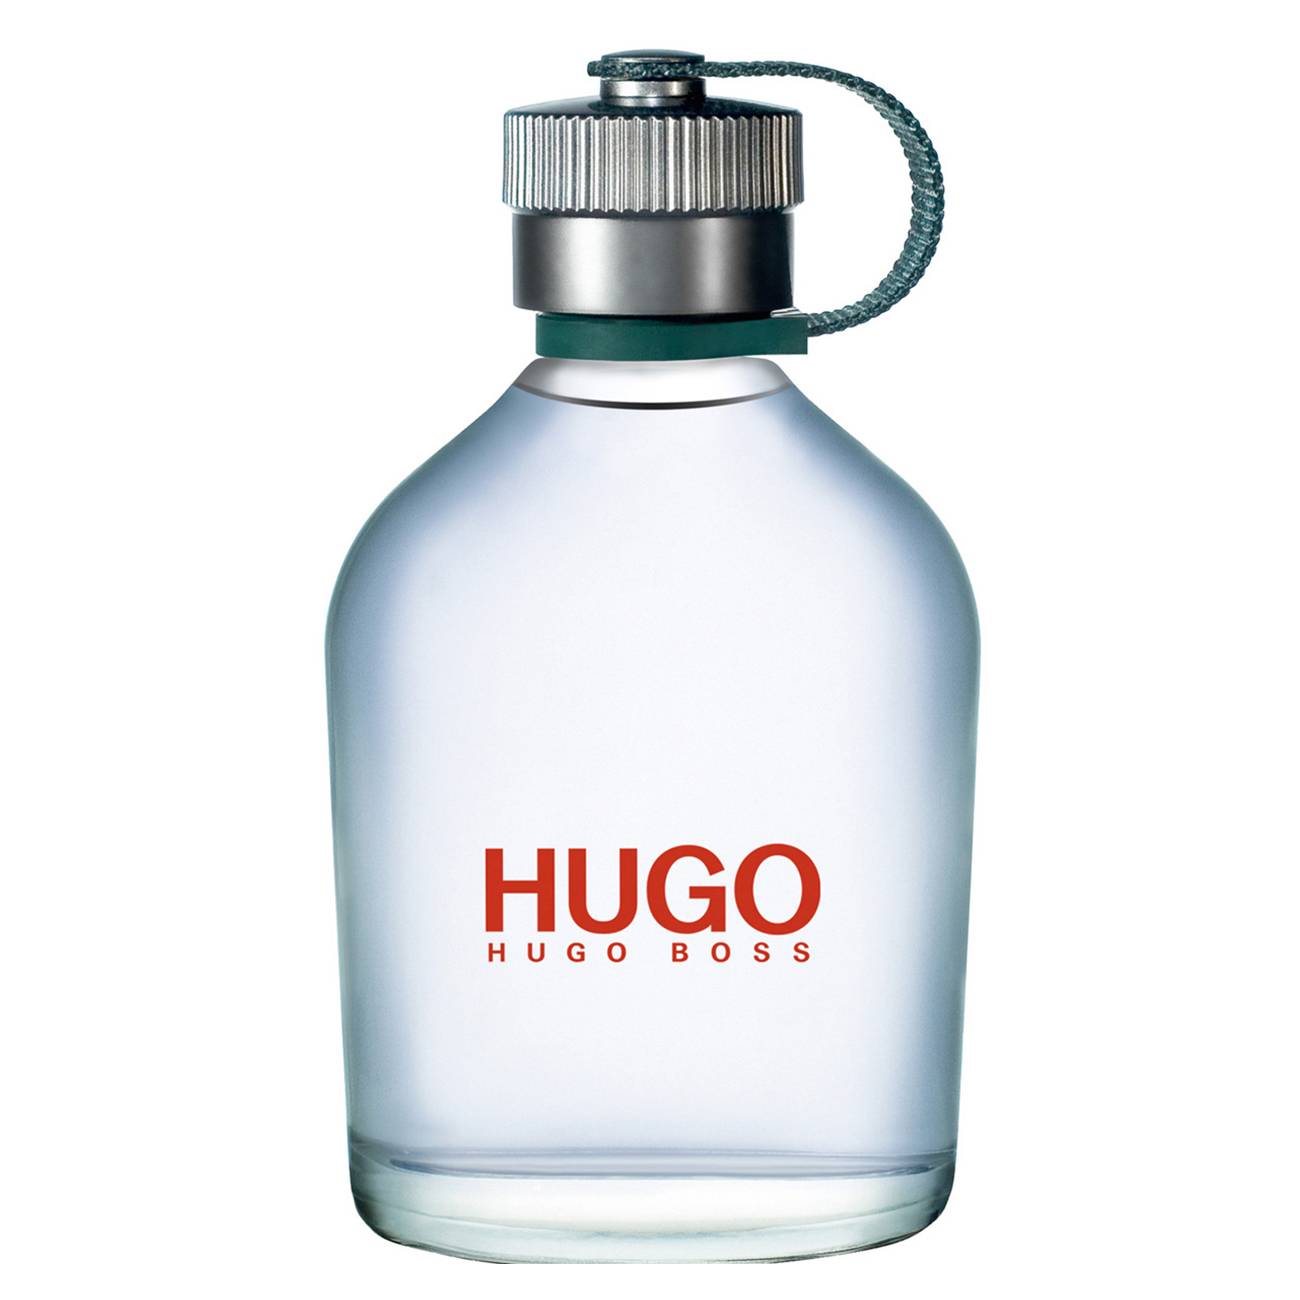 Apa de Toaleta Hugo Boss HUGO 150ml cu comanda online